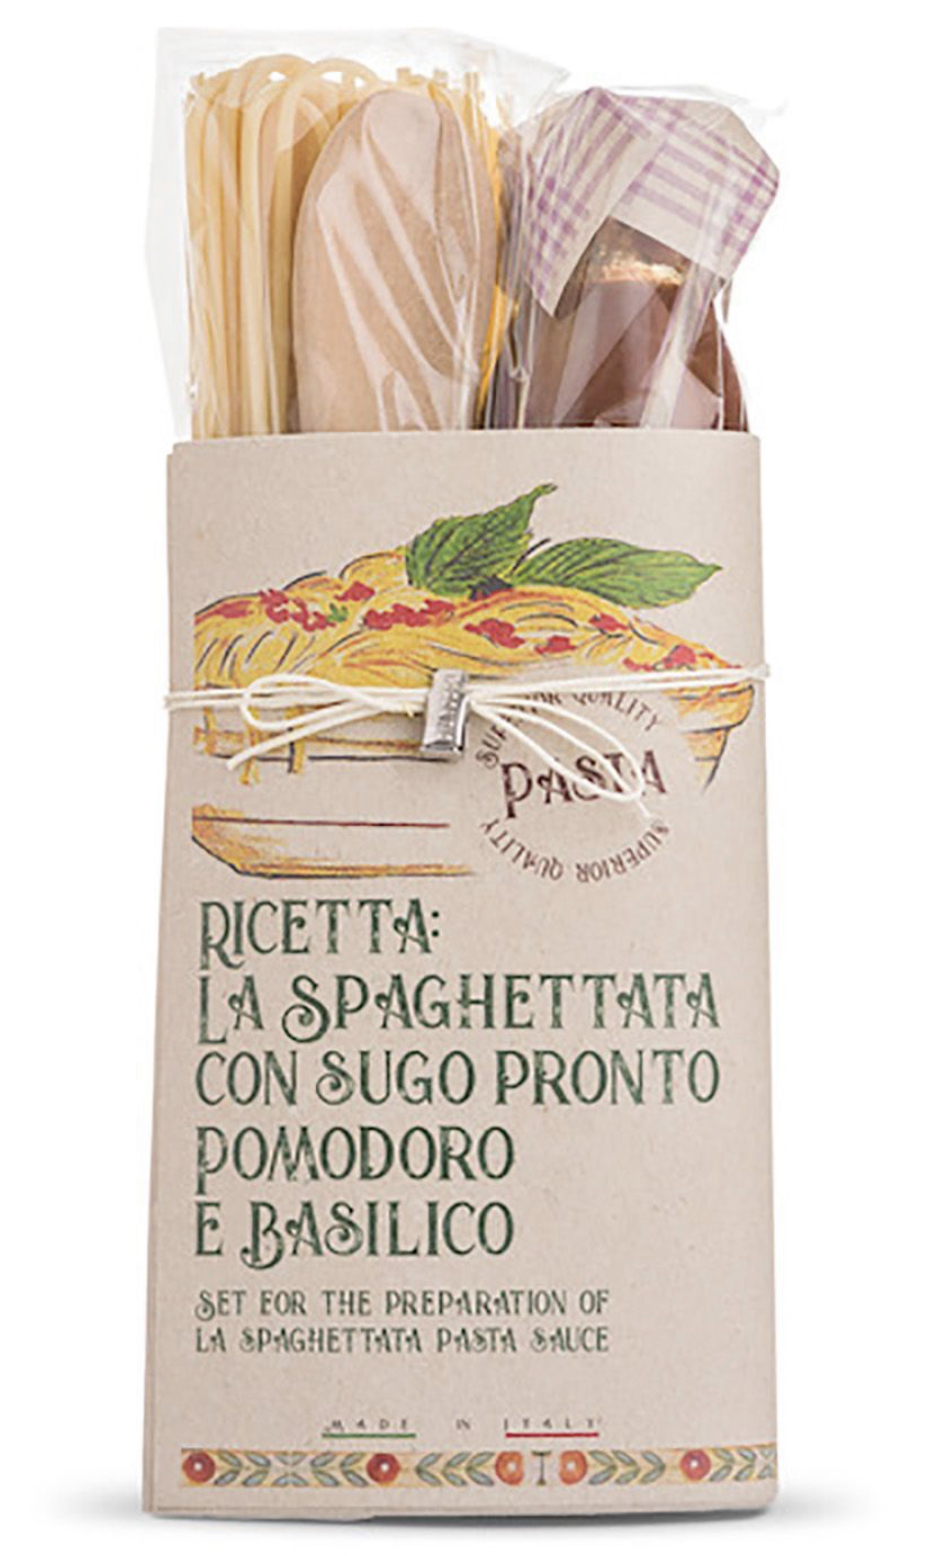 Uit de keuken van: Spaghettata al pomodoro e basilico